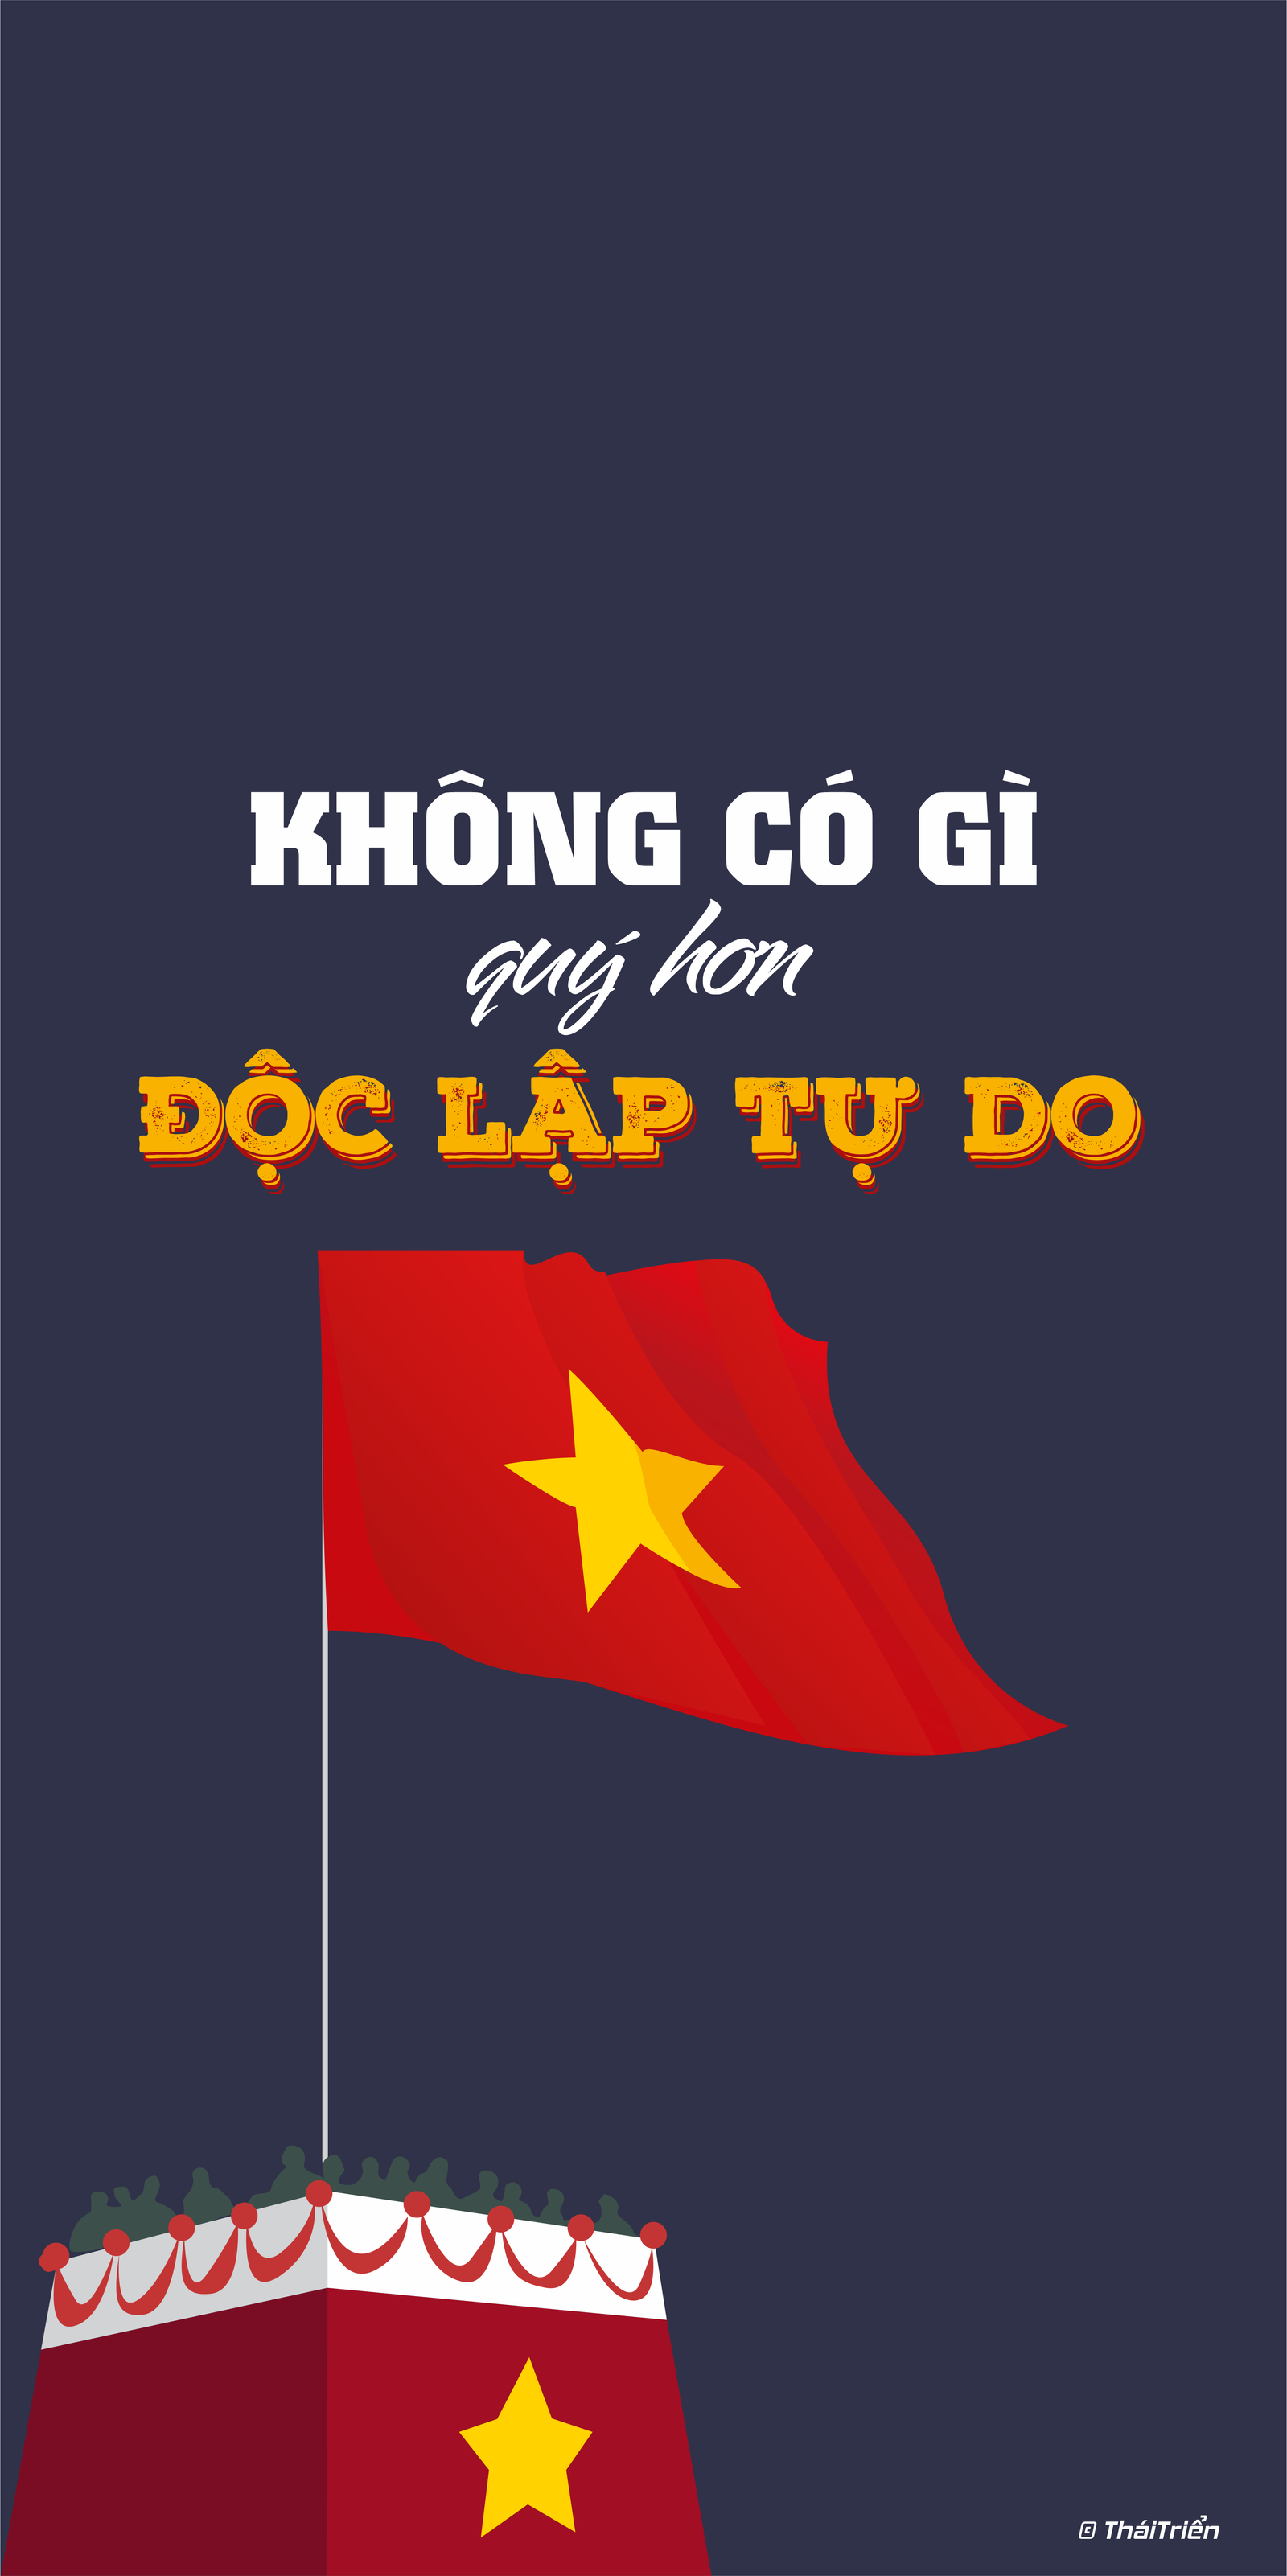 Hình nền đầy sắc màu và ý nghĩa mang đến không khí rực rỡ cho Ngày Quốc khánh. Cùng nhìn lại quãng đường ấn tượng của đất nước chúng ta, với niềm tự hào về đất nước và dân tộc Việt Nam.